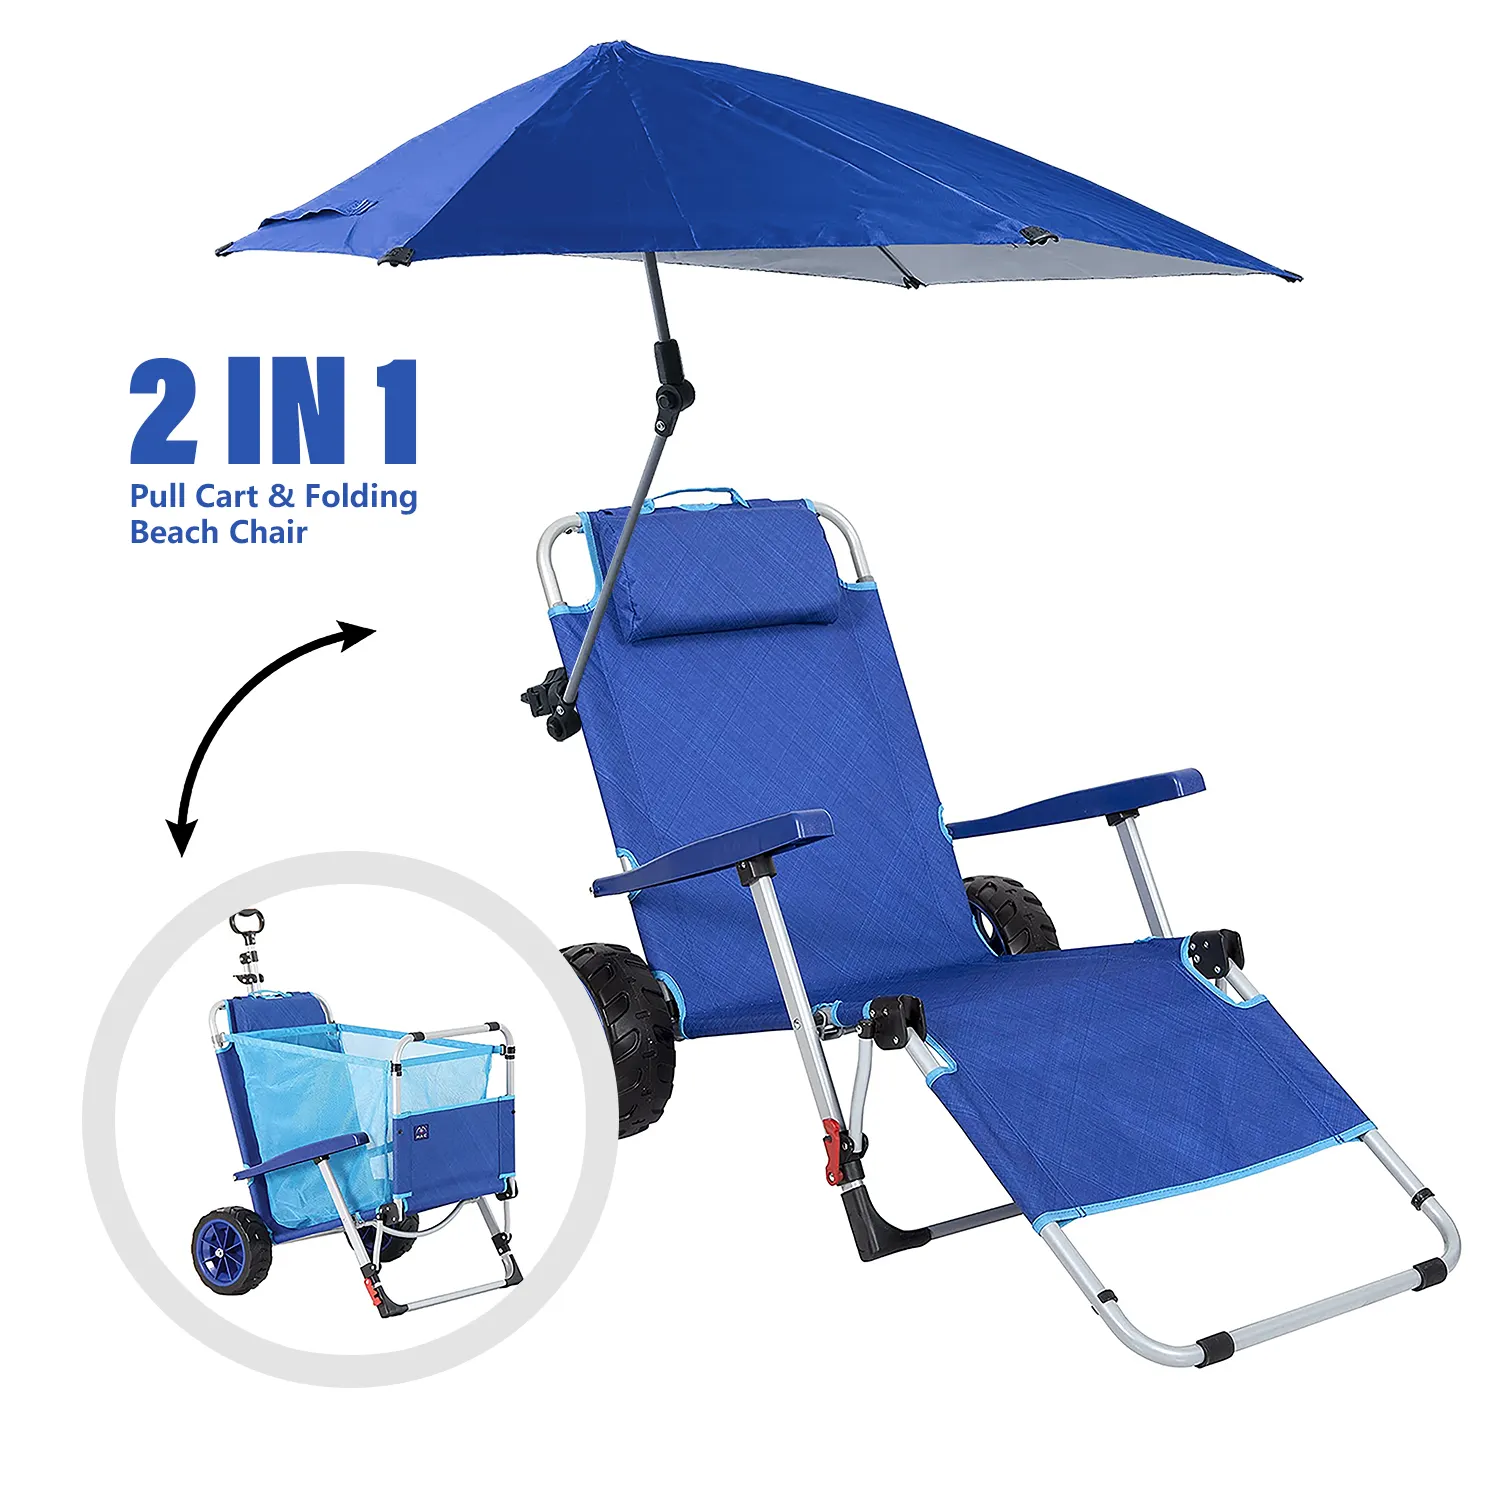 OEM fabrika plaj günü katlanabilir balık sandalye 2 IN 1 kamp katlanır plaj sandalyesi ile gölgelik entegre vagon çekme sepeti kombinasyonu